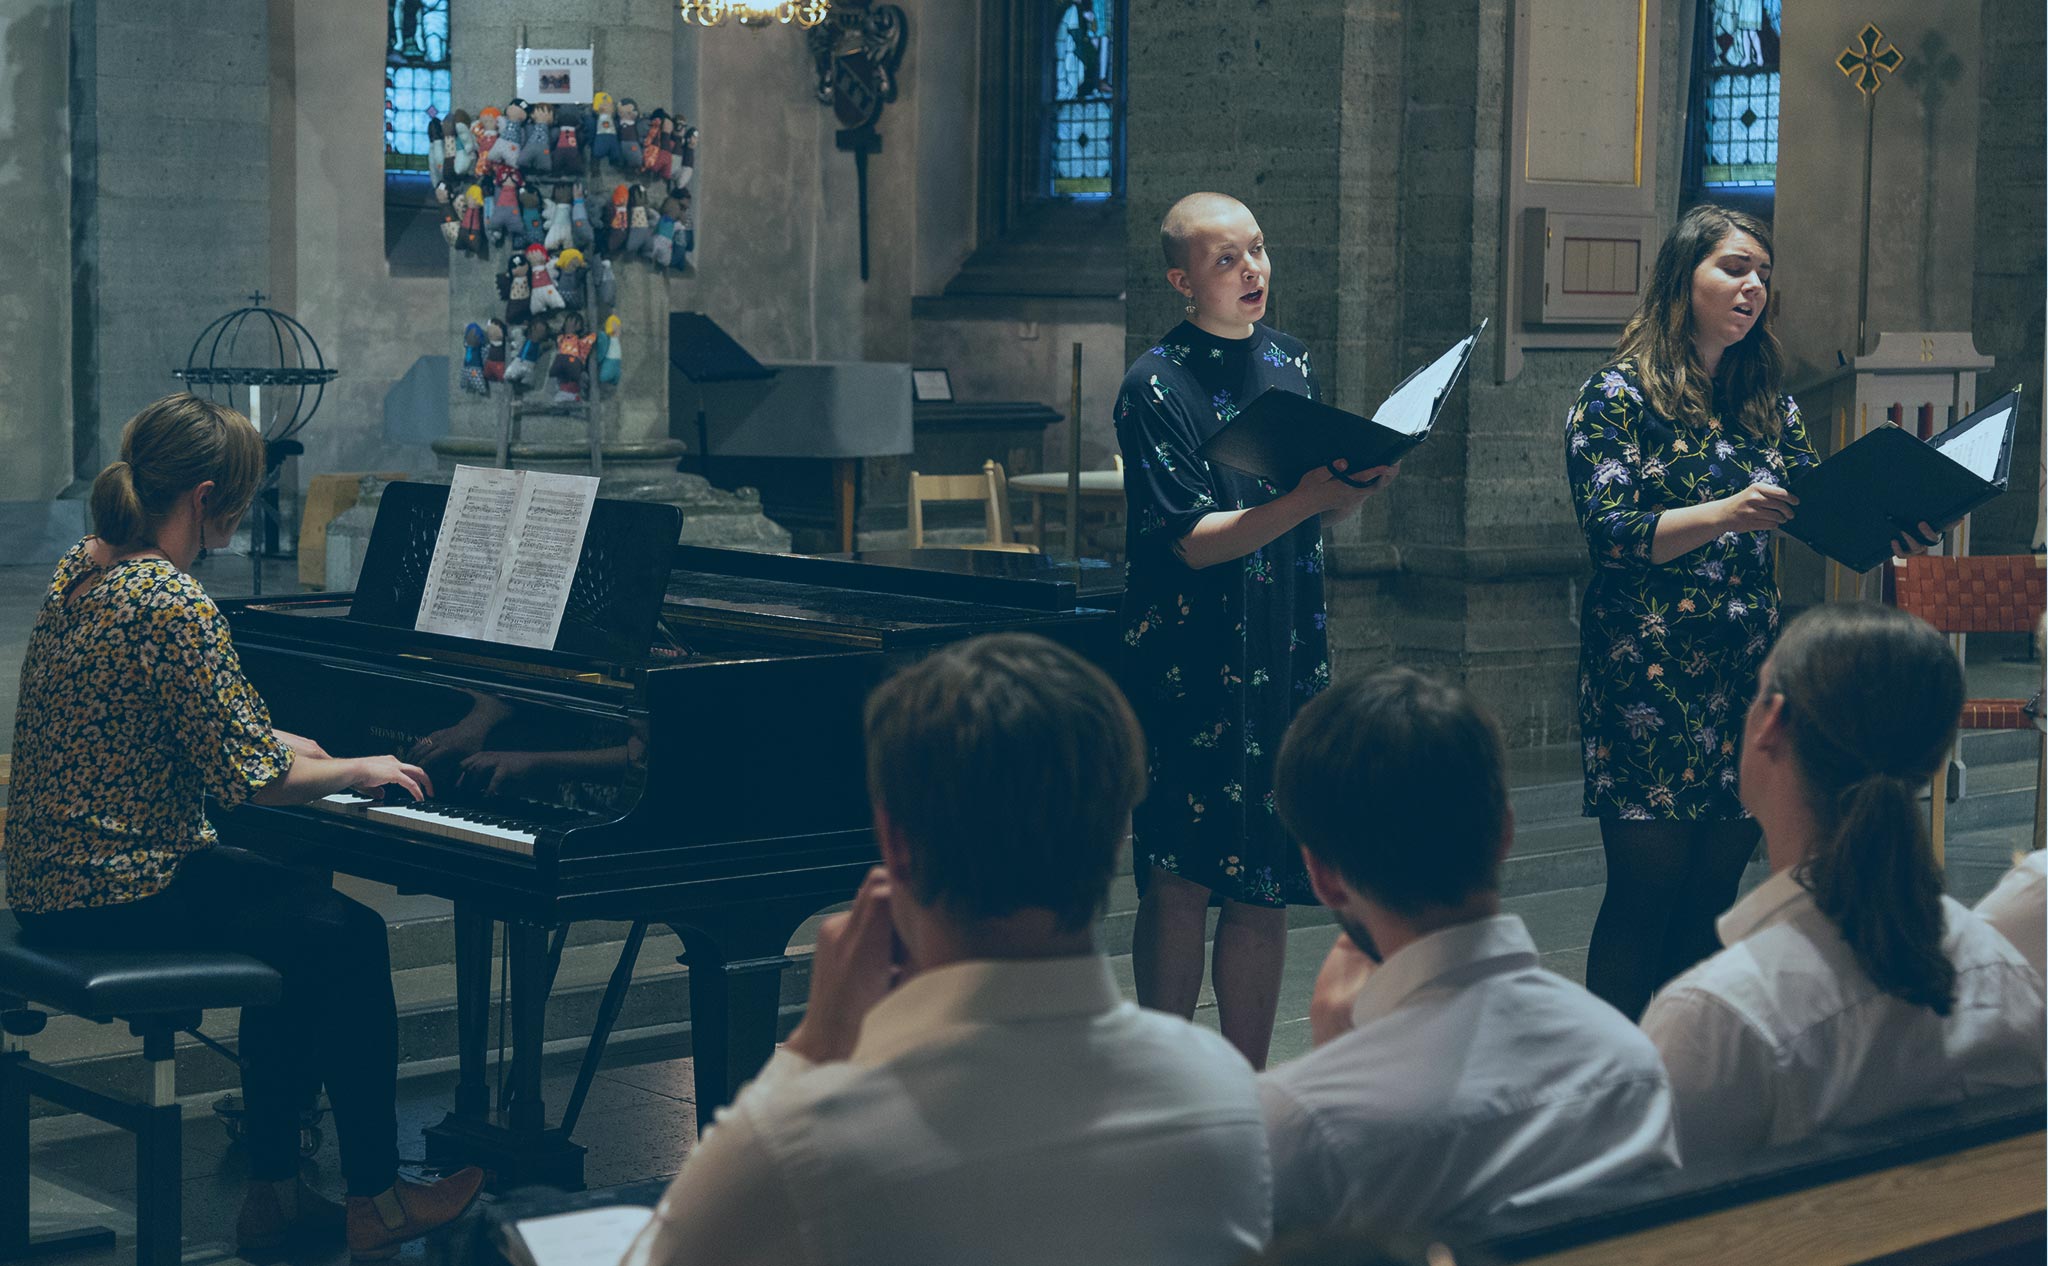 Blåtonat foto från Nicolaikyrkan i Örebro. En pianist ackompanjerar två sångare. I förgrunden tre personer i publiken klädda i vita skjortor.